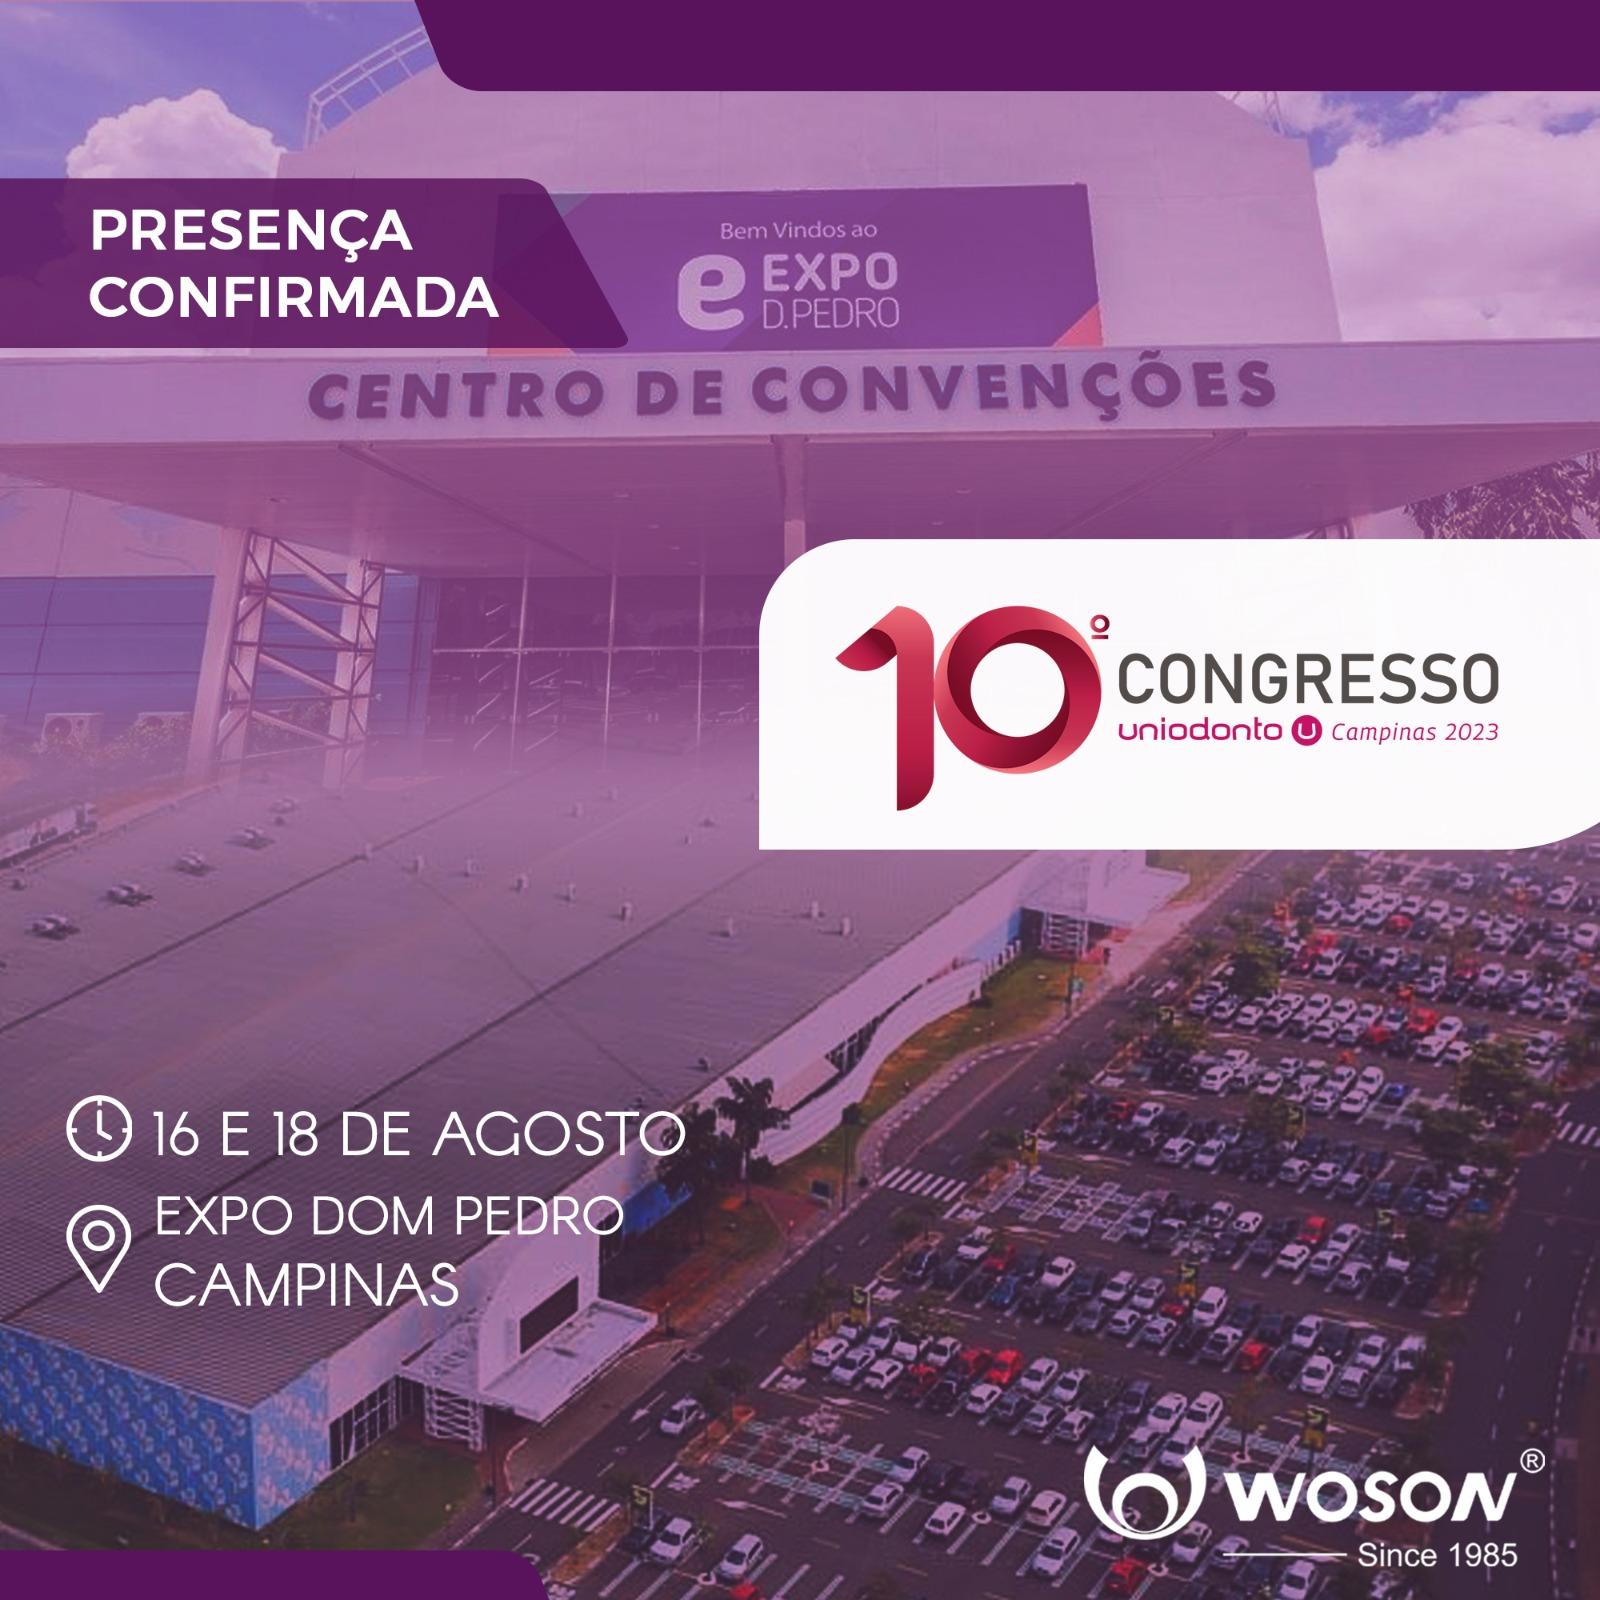 WOSON E UNIODONTO CAMPINAS, JUNTOS NO 10º CONGRESSO.